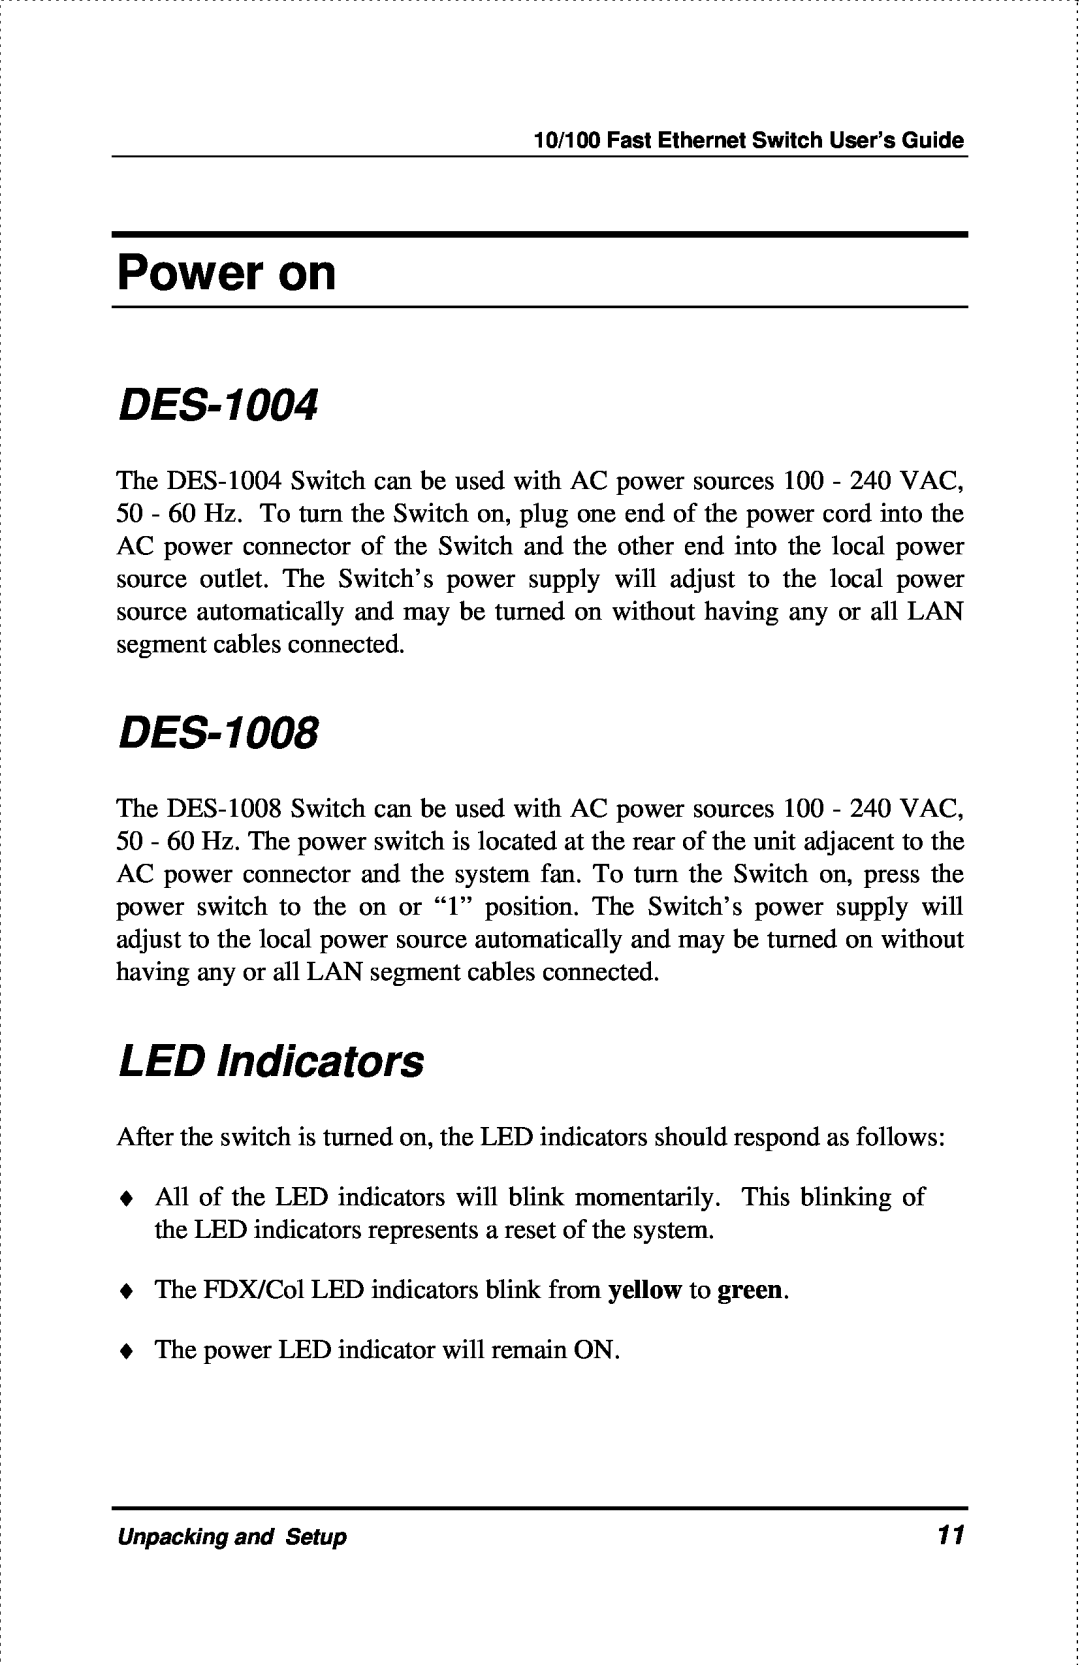 D-Link DES-1004 manual Power on, DES-1008, LED Indicators 